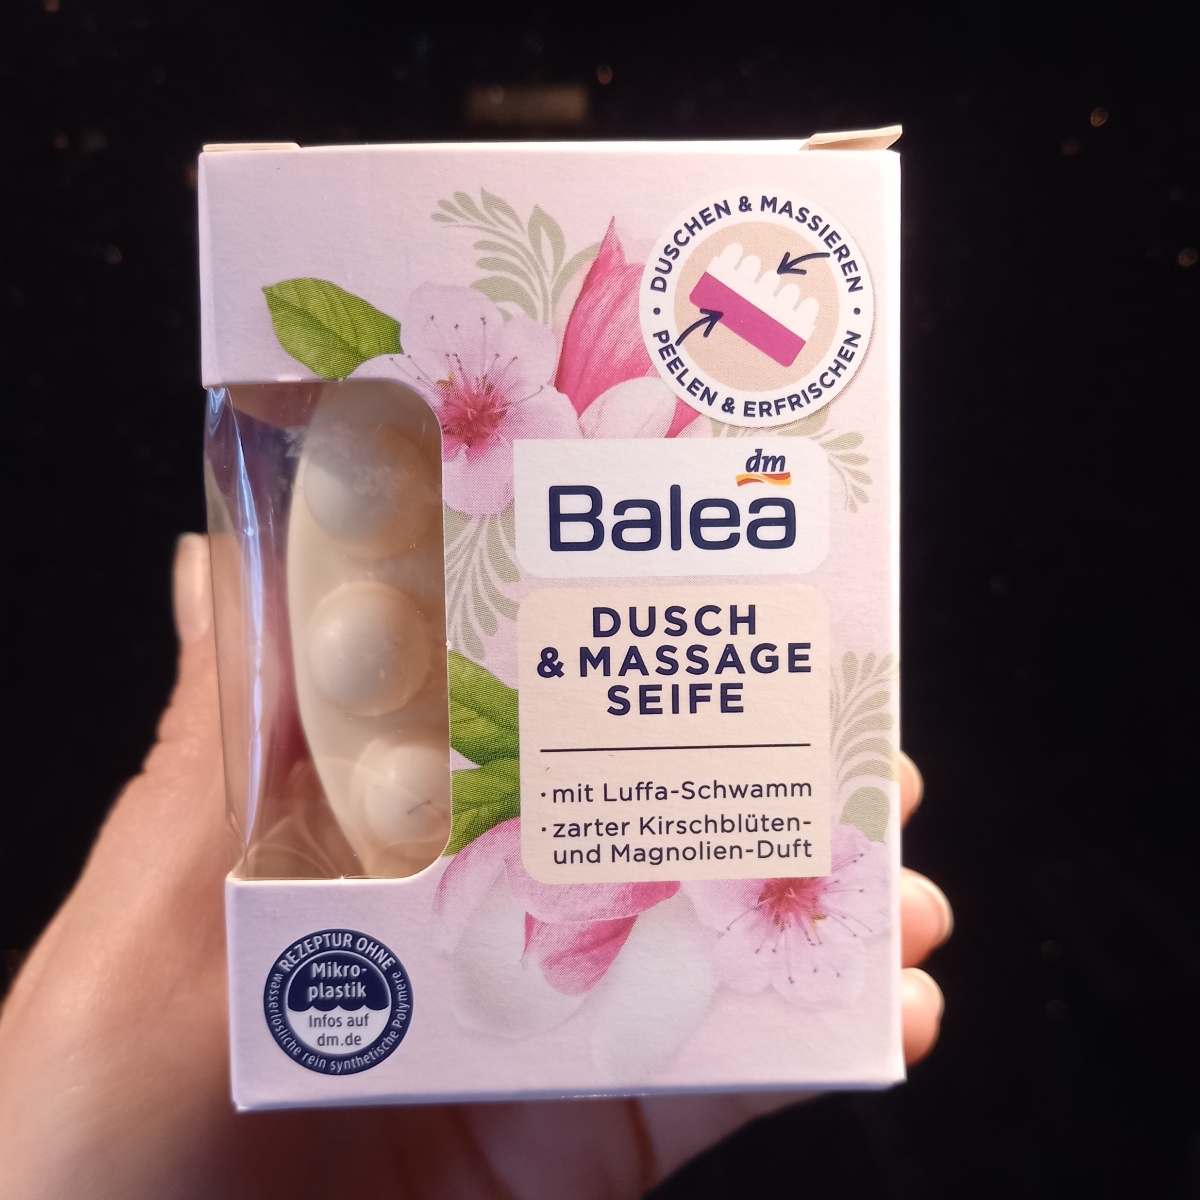 Balea Dusch & Massage Seife Reviews | abillion